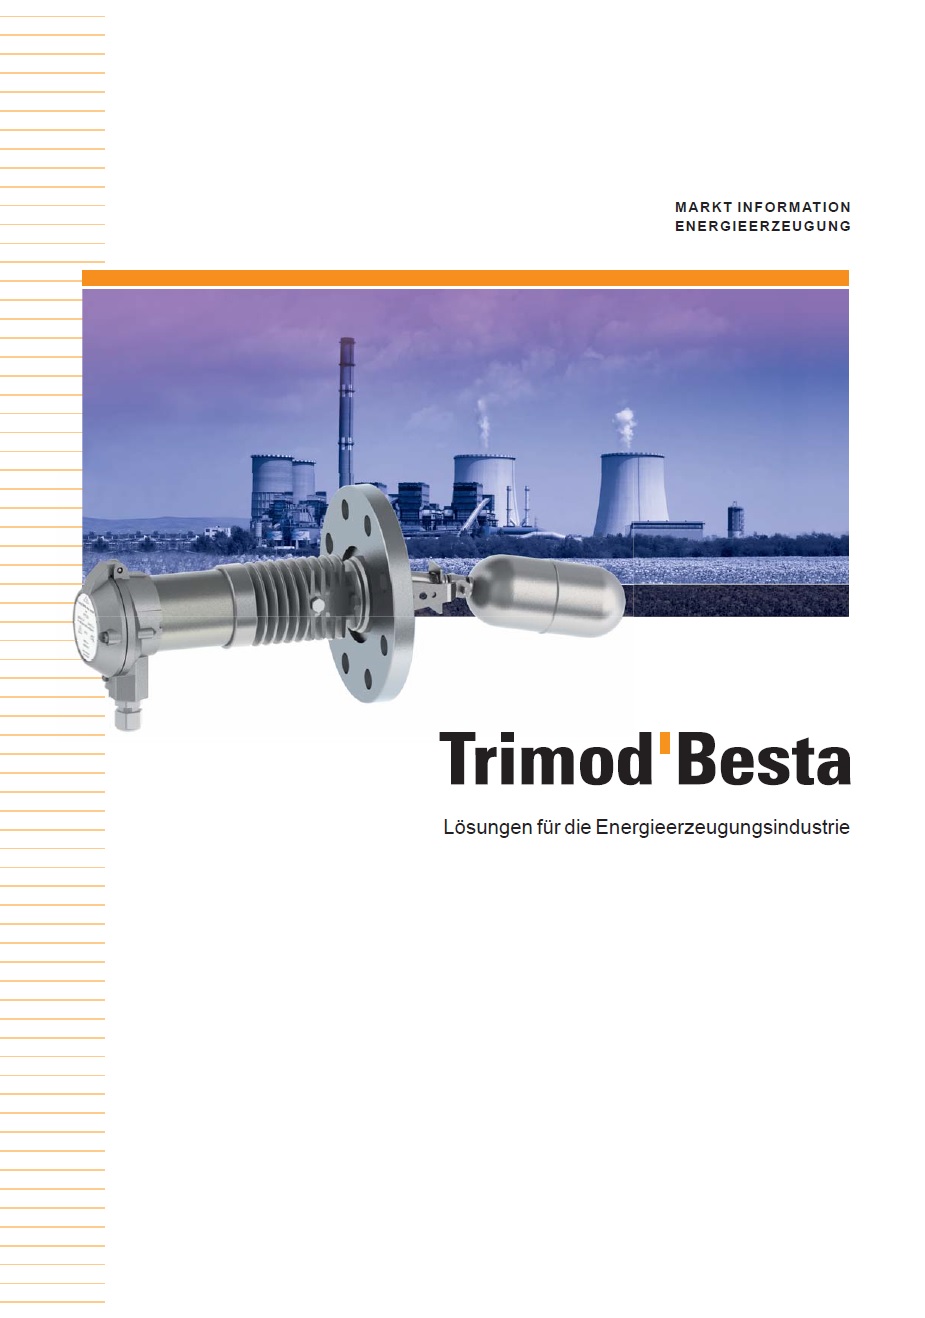 Besta Trimod für die Energieerzeugungsindustrie